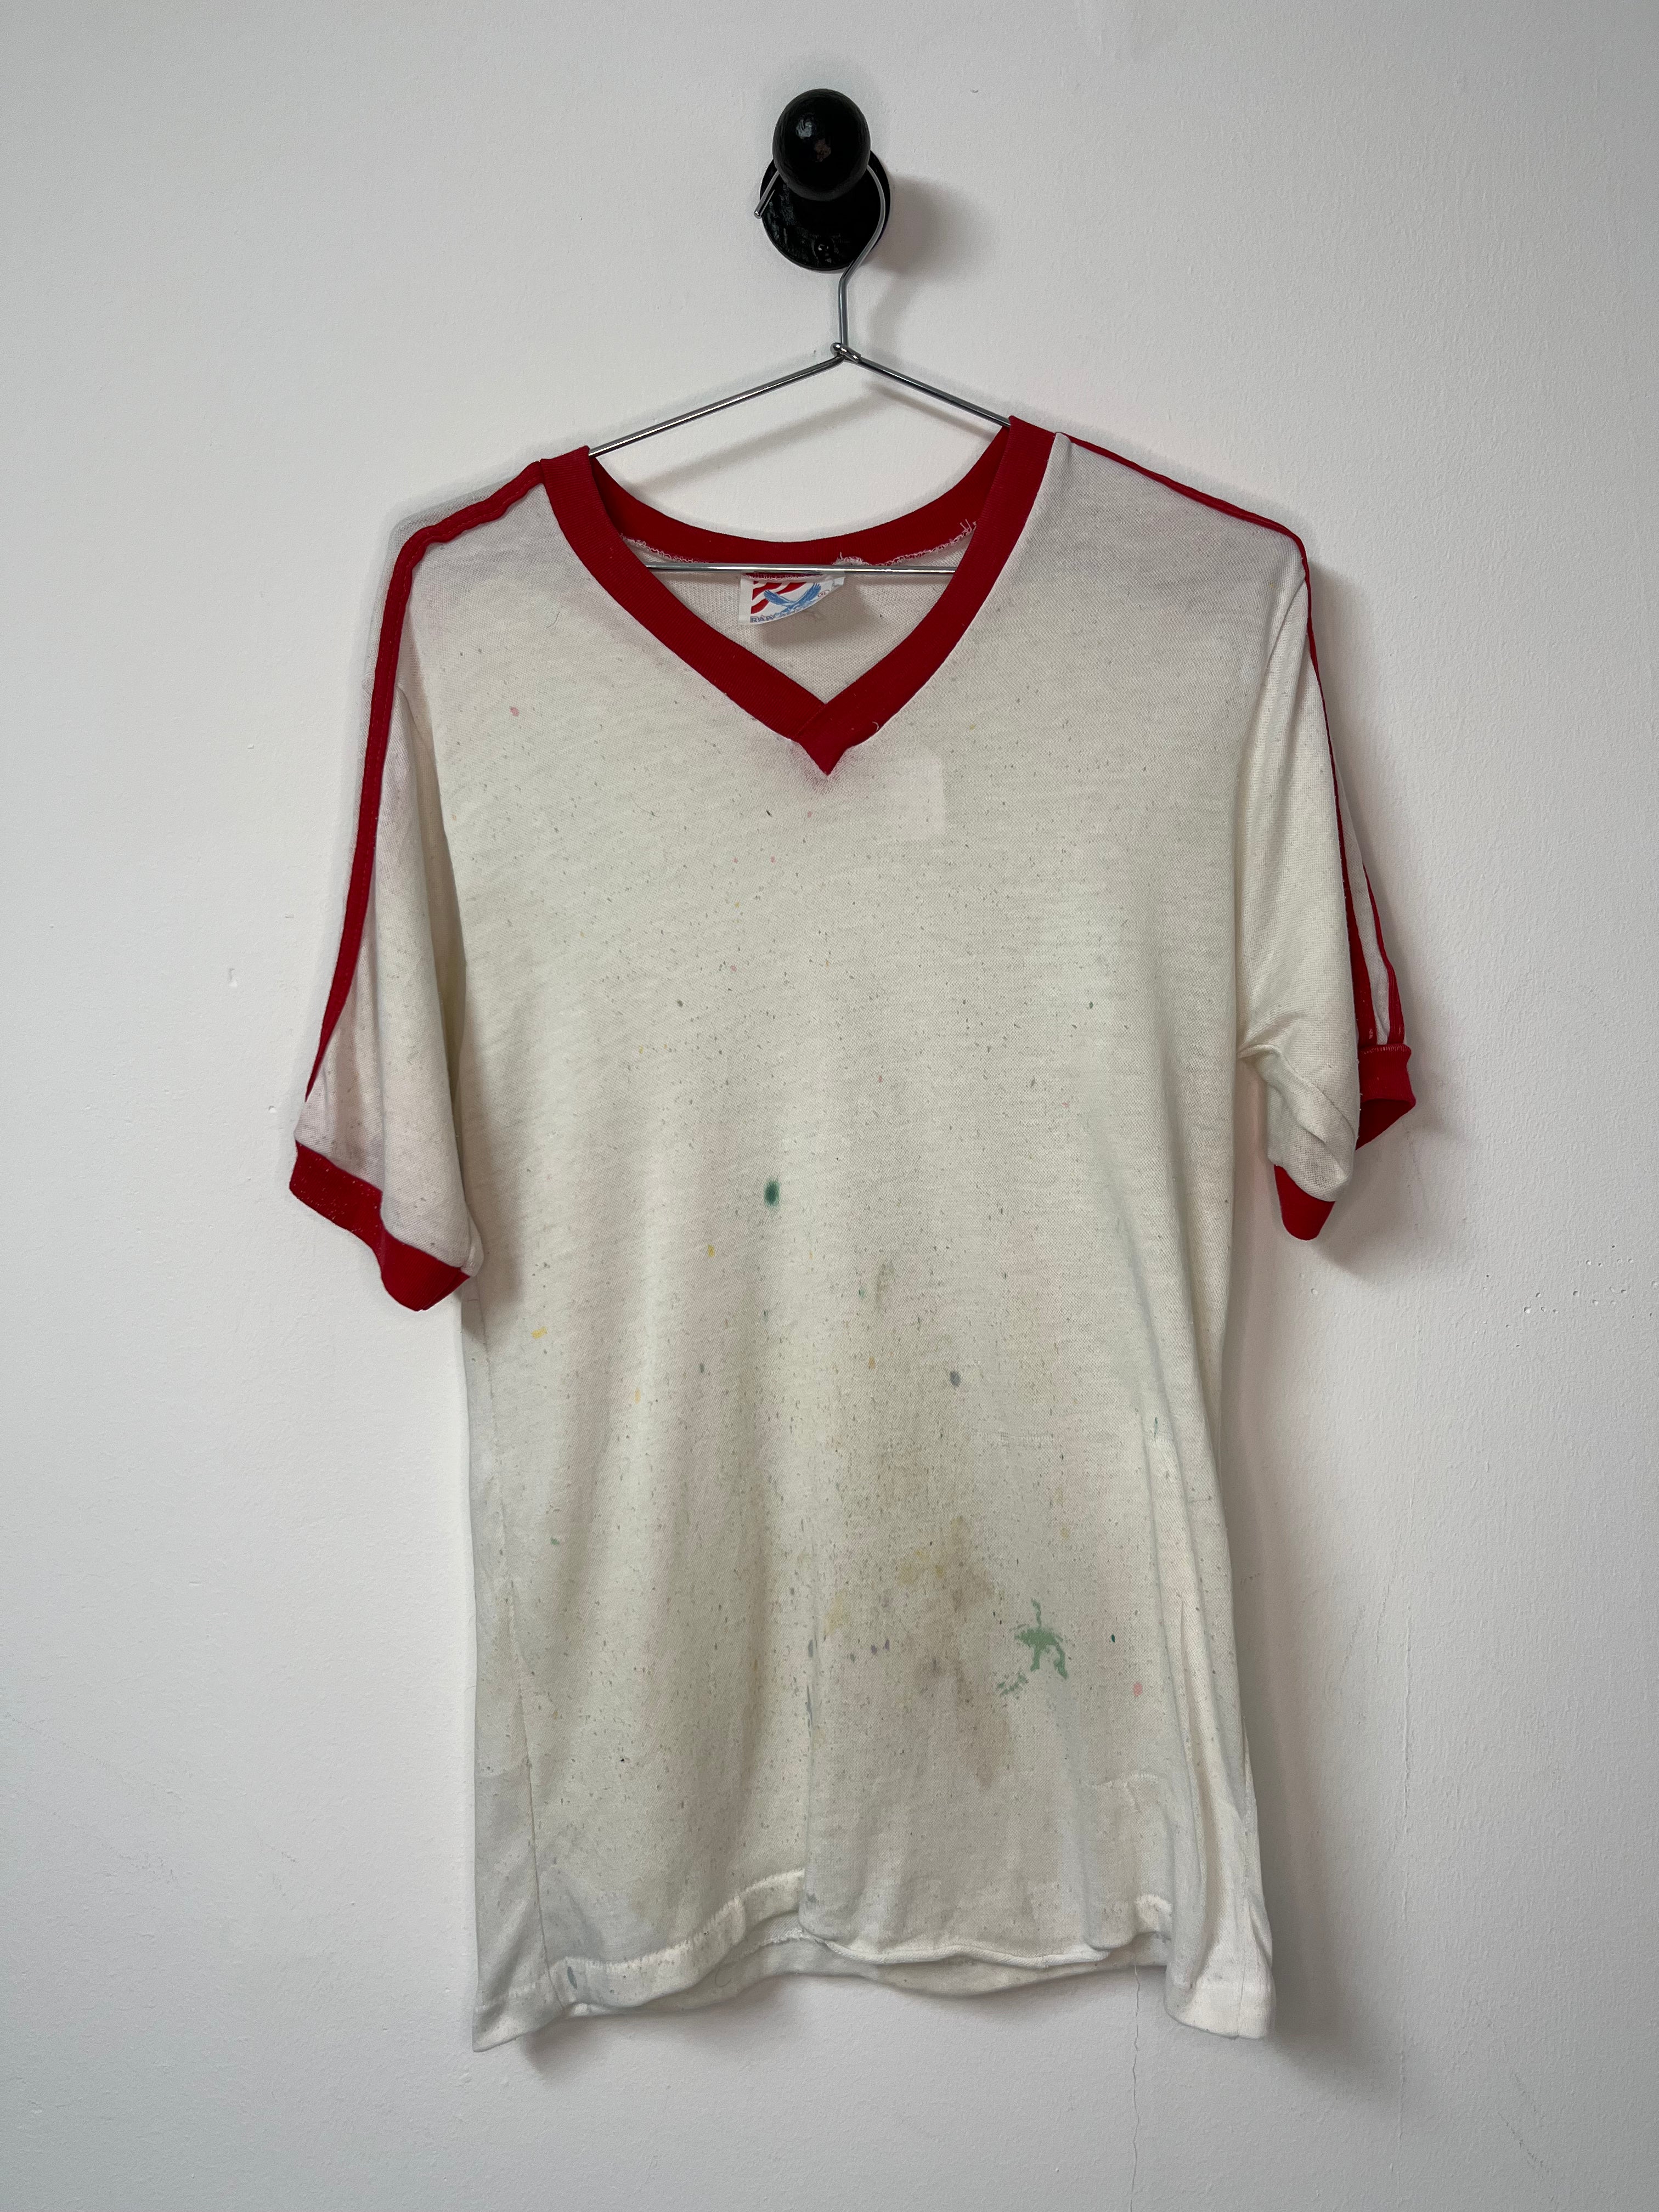 1970s/80s Striped and Trimmed V-Neck Ringer T-Shirt - White/Red - M